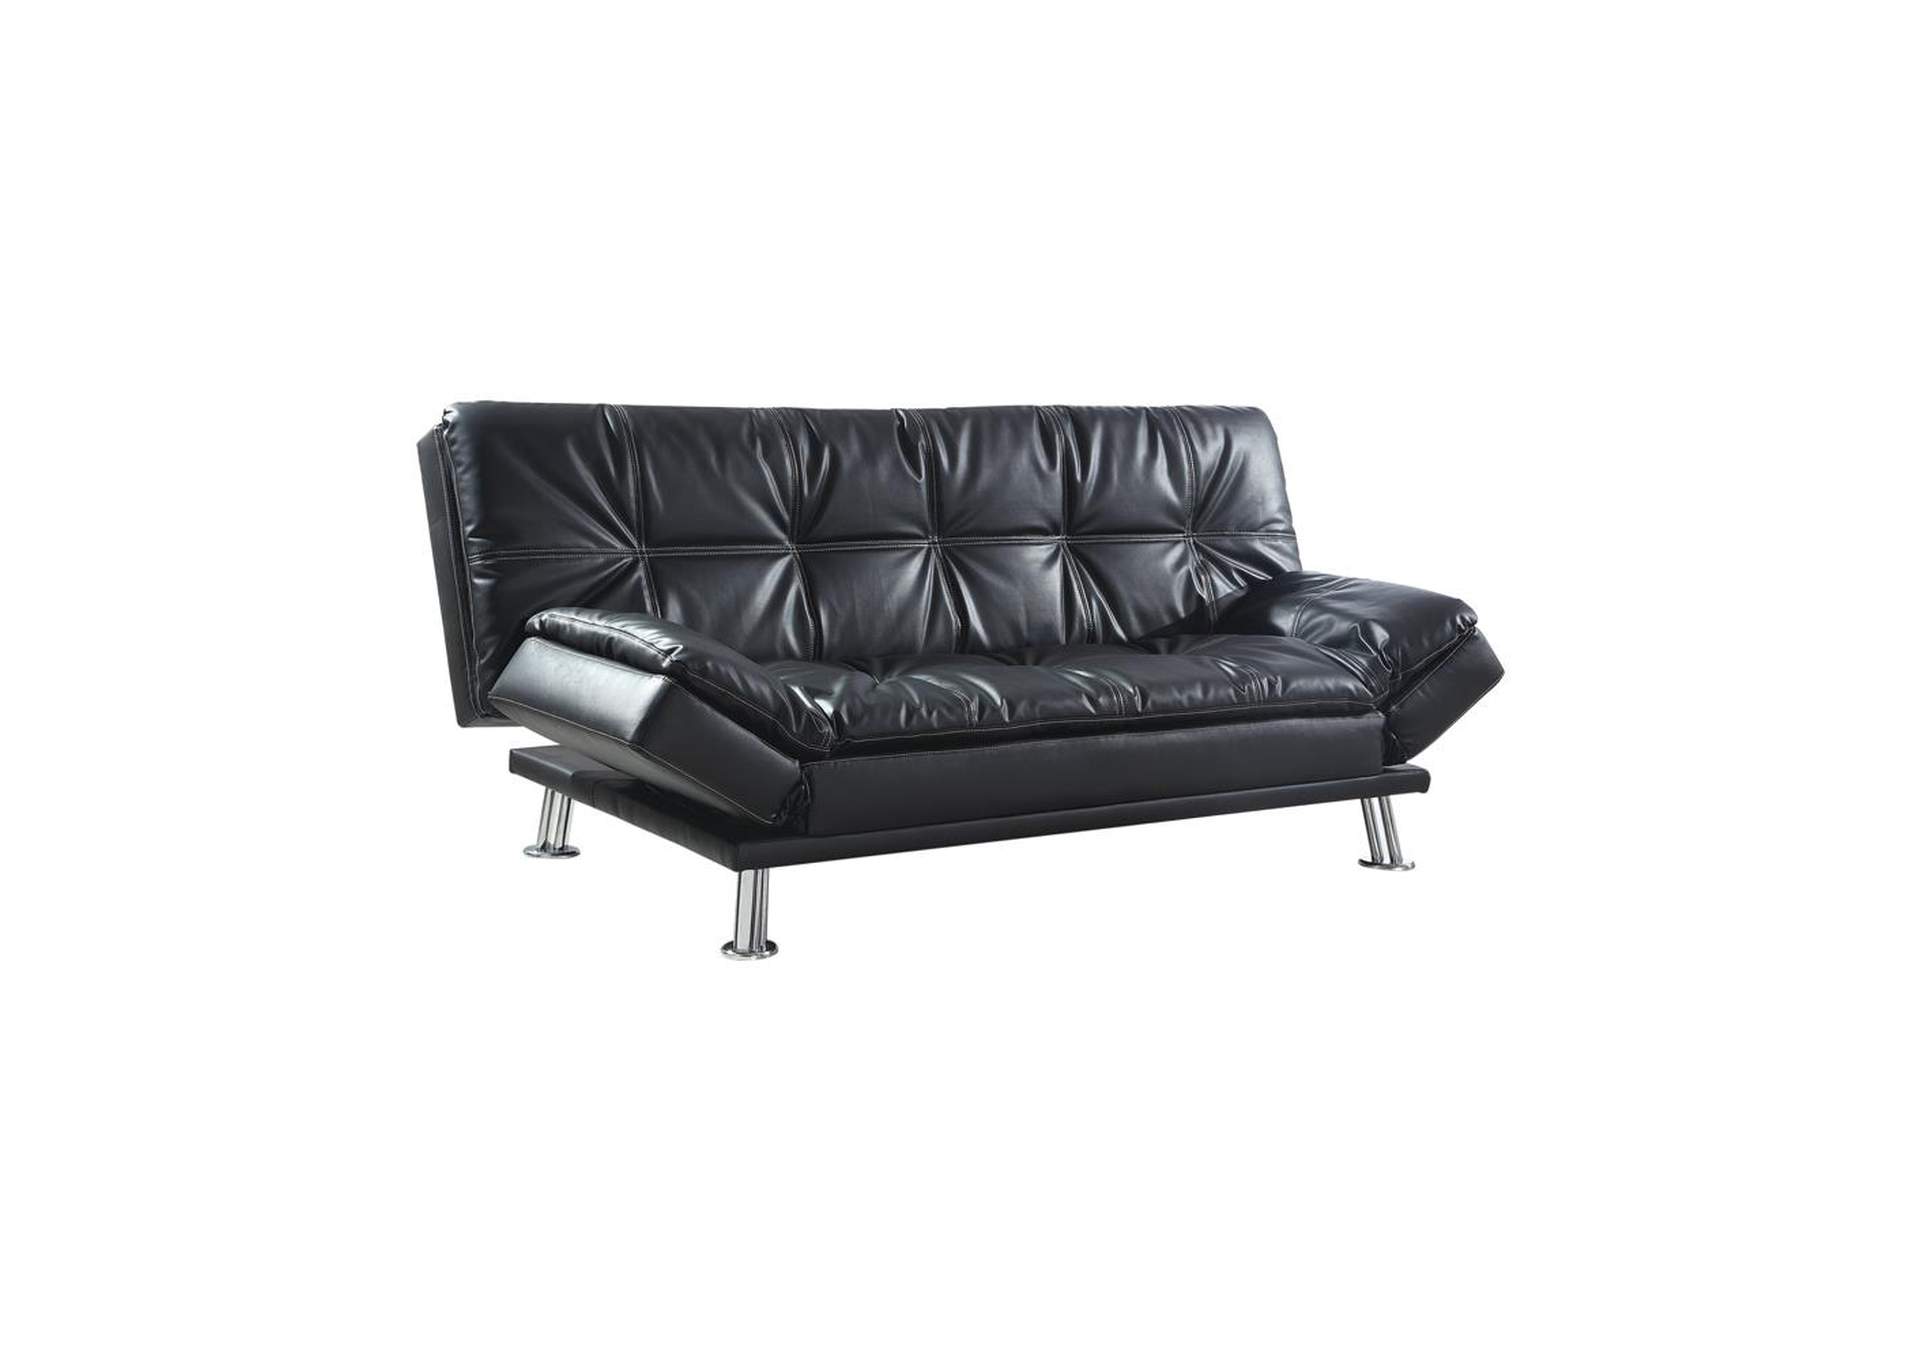 Tuna Dilleston Contemporary Black Sofa Bed,Coaster Furniture